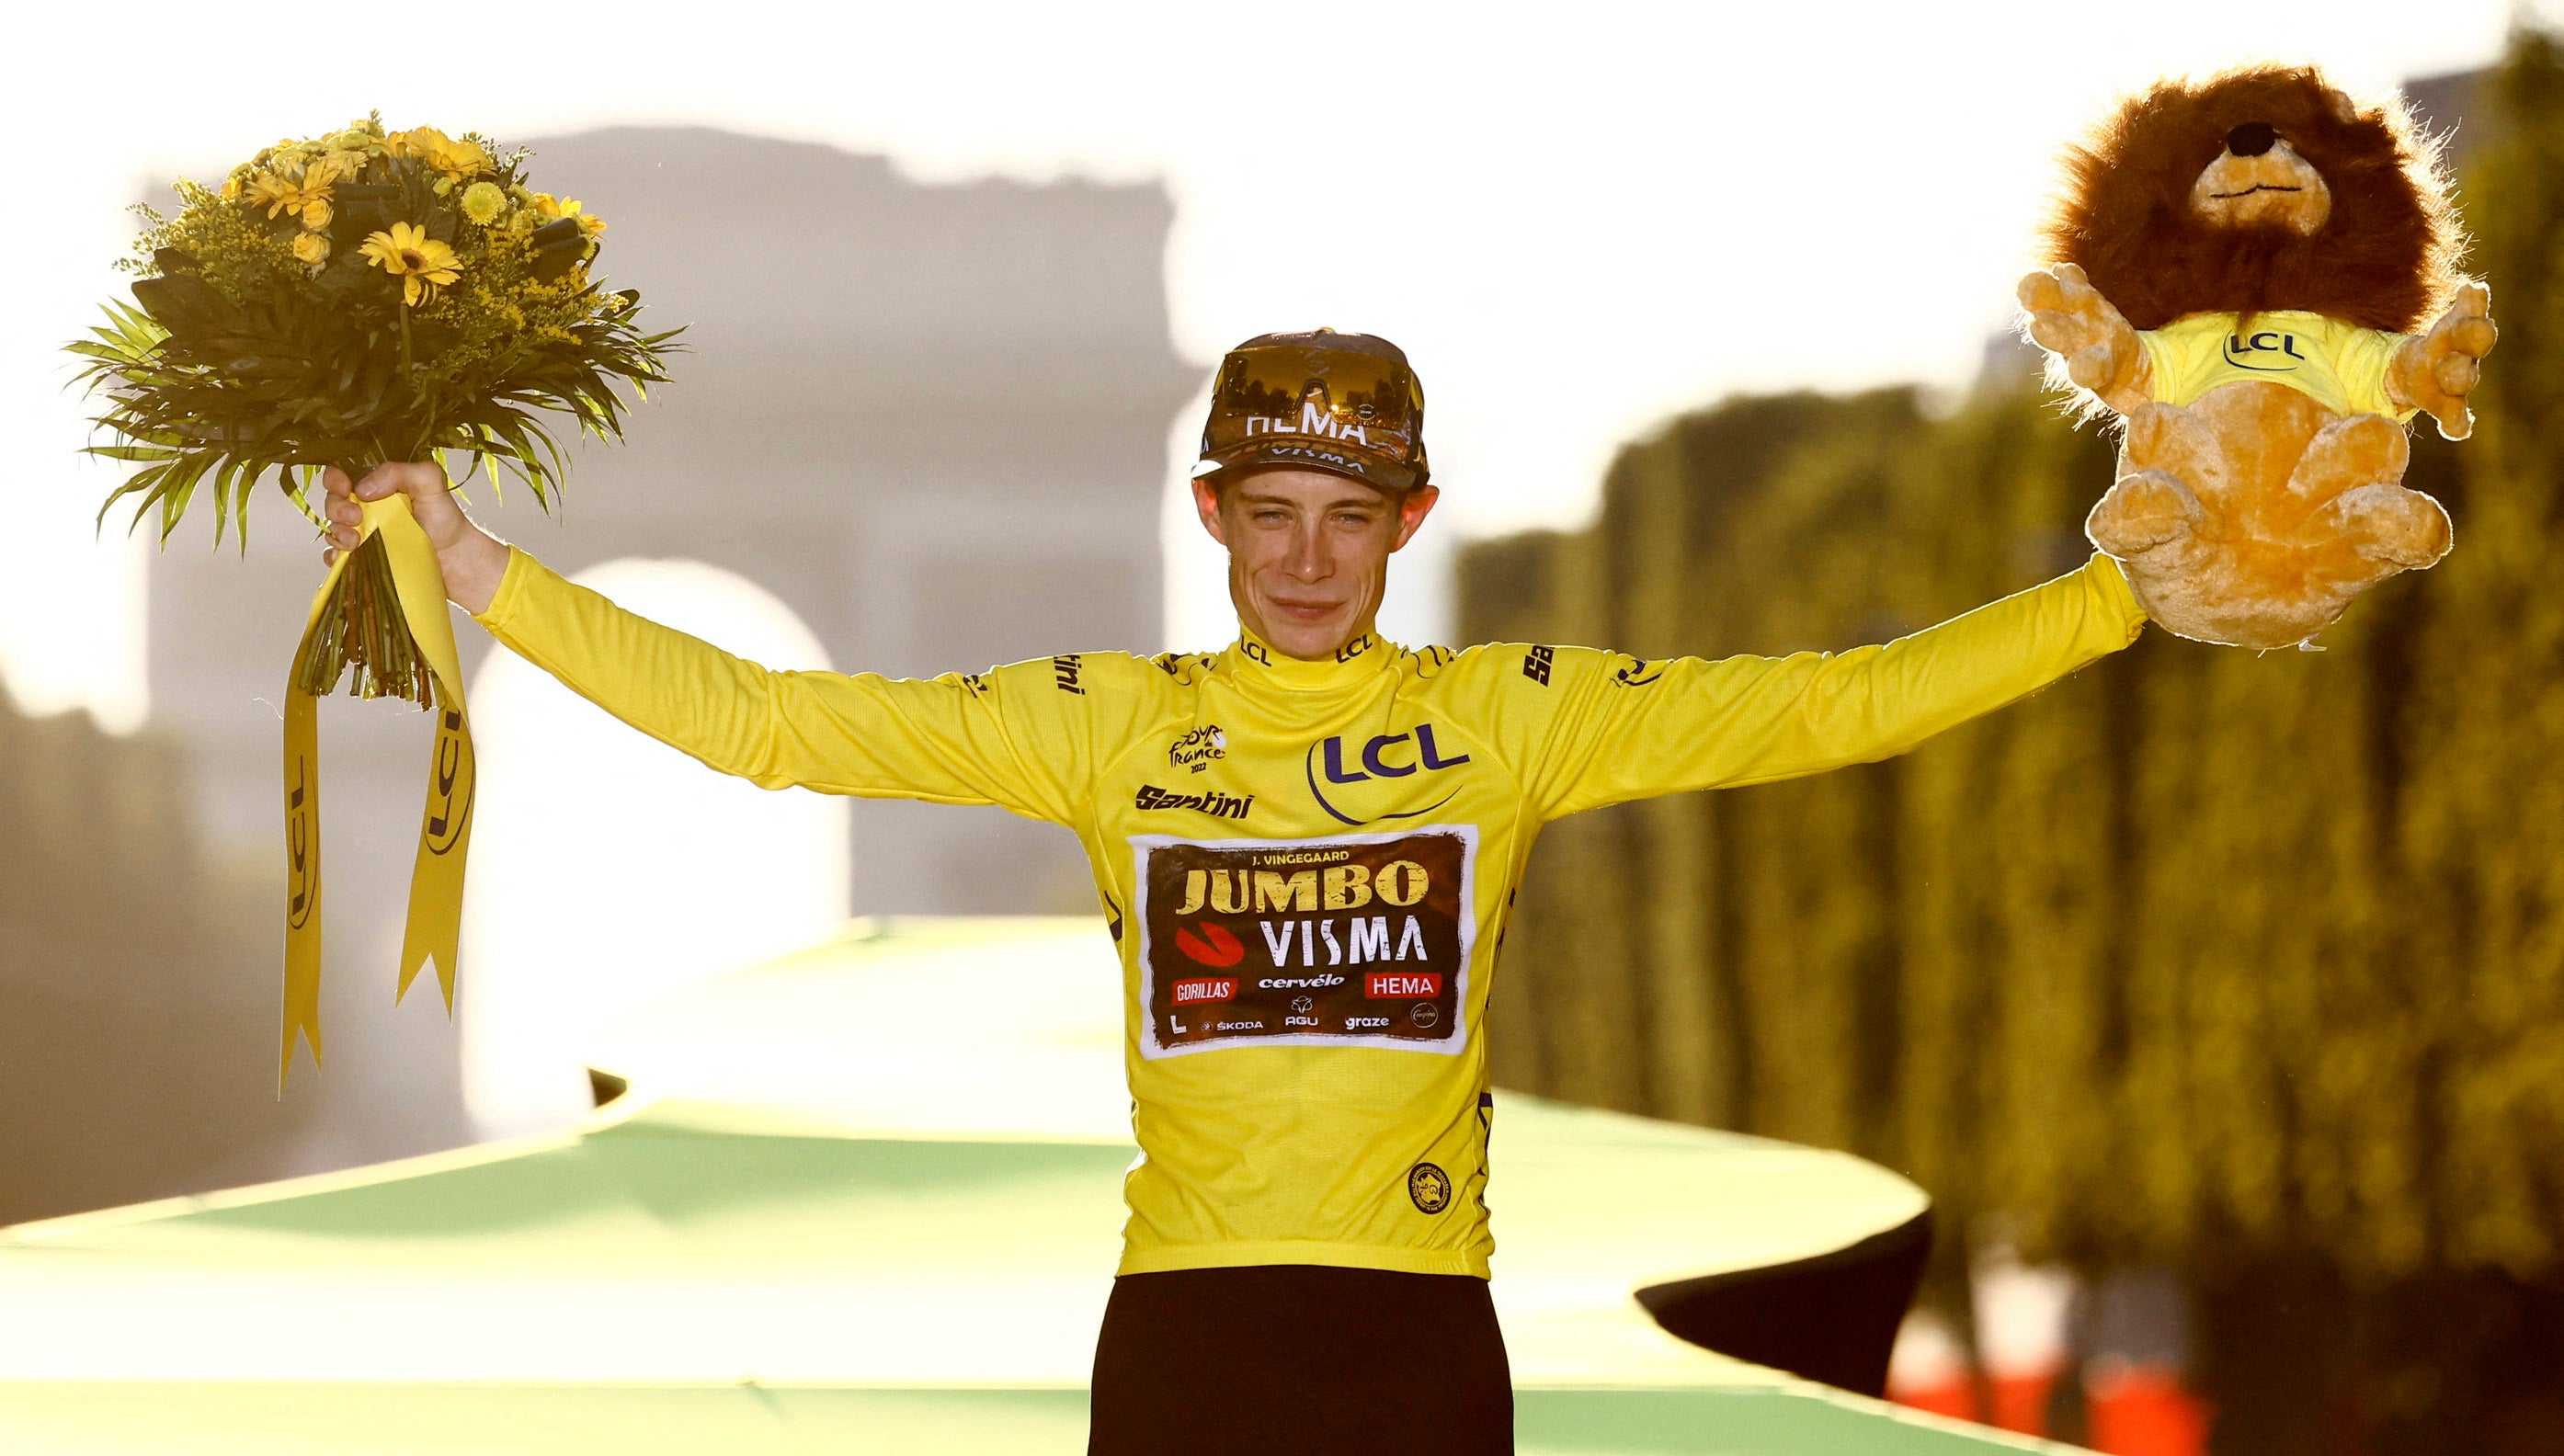 Jumbo-Visma’s Jonas Vingegaard celebrates on the podium